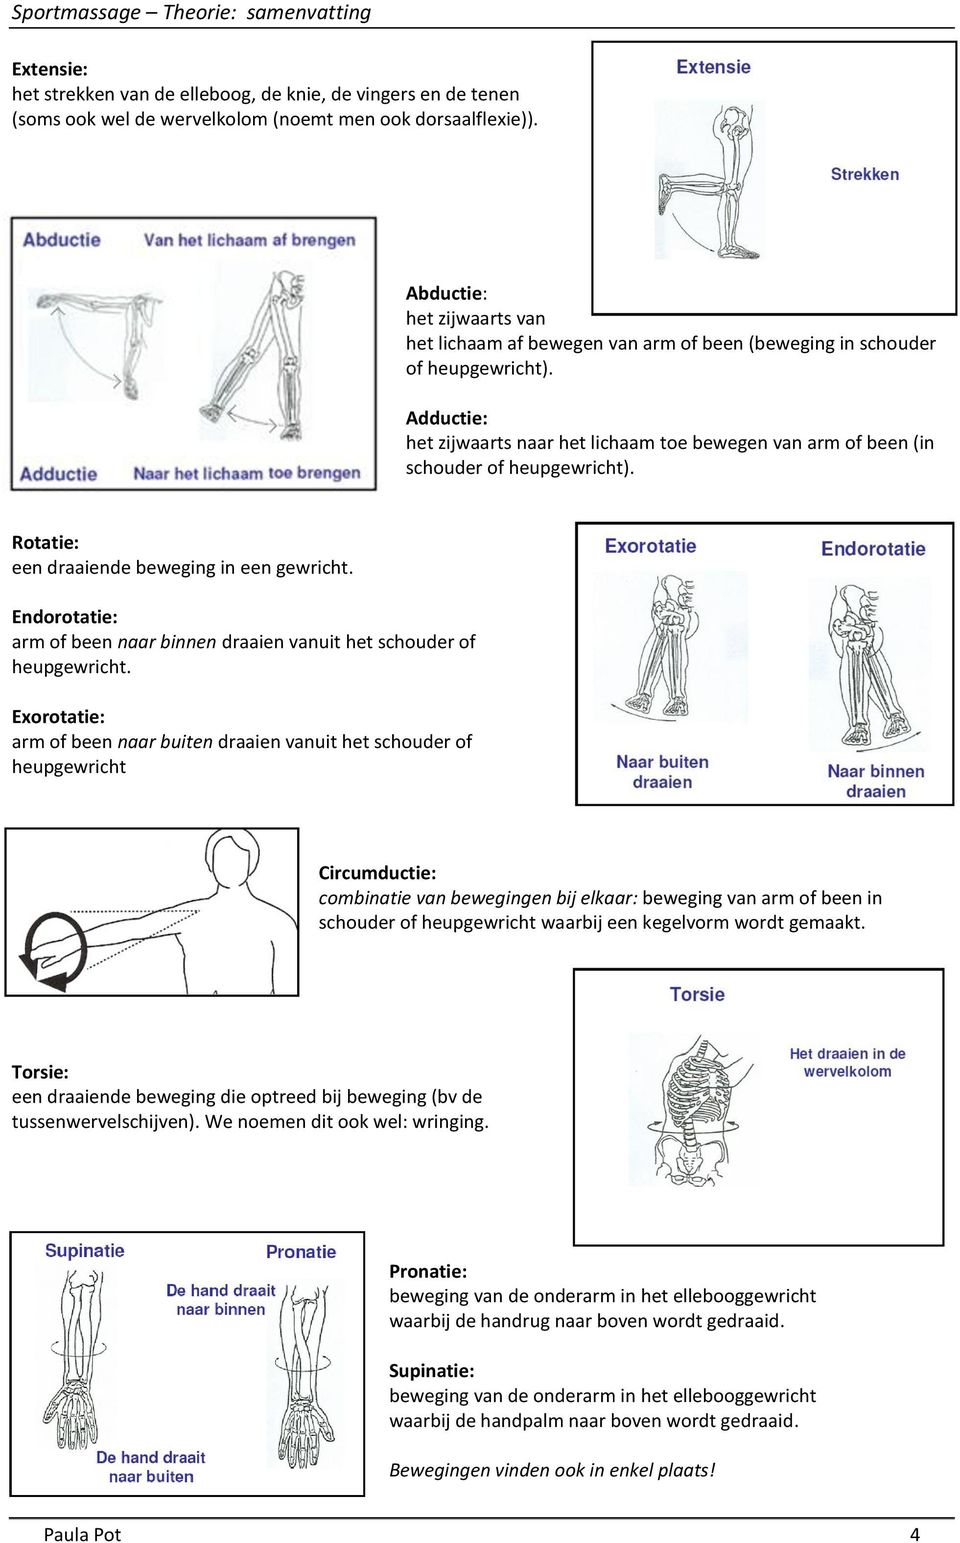 Adductie: het zijwaarts naar het lichaam toe bewegen van arm of been (in schouder of heupgewricht). Rotatie: een draaiende beweging in een gewricht.